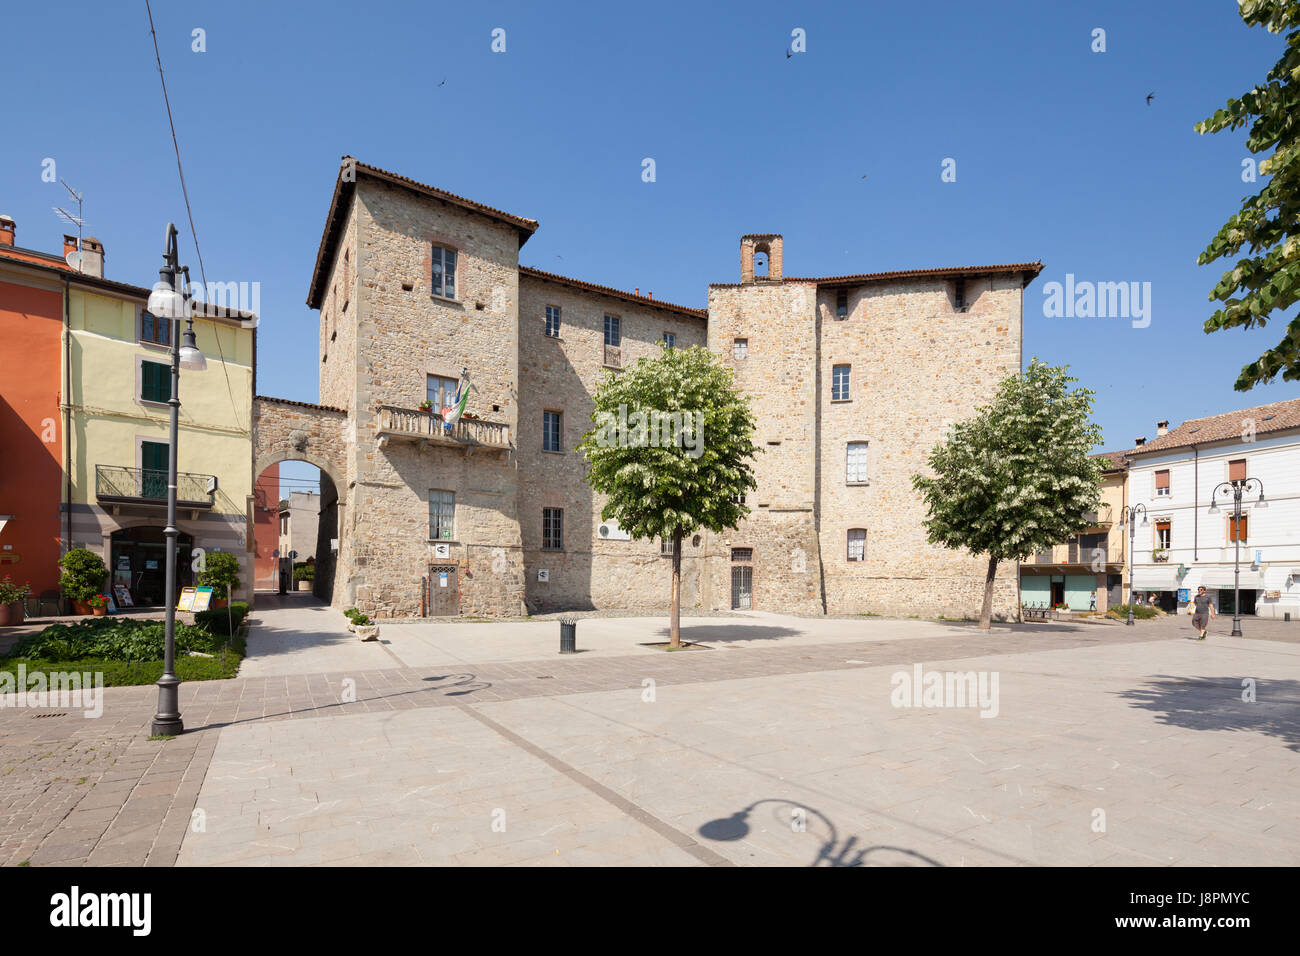 Rocca Dal Verme, également appelé Rocca Municipale. Pianello Val Tidone, Italie Banque D'Images